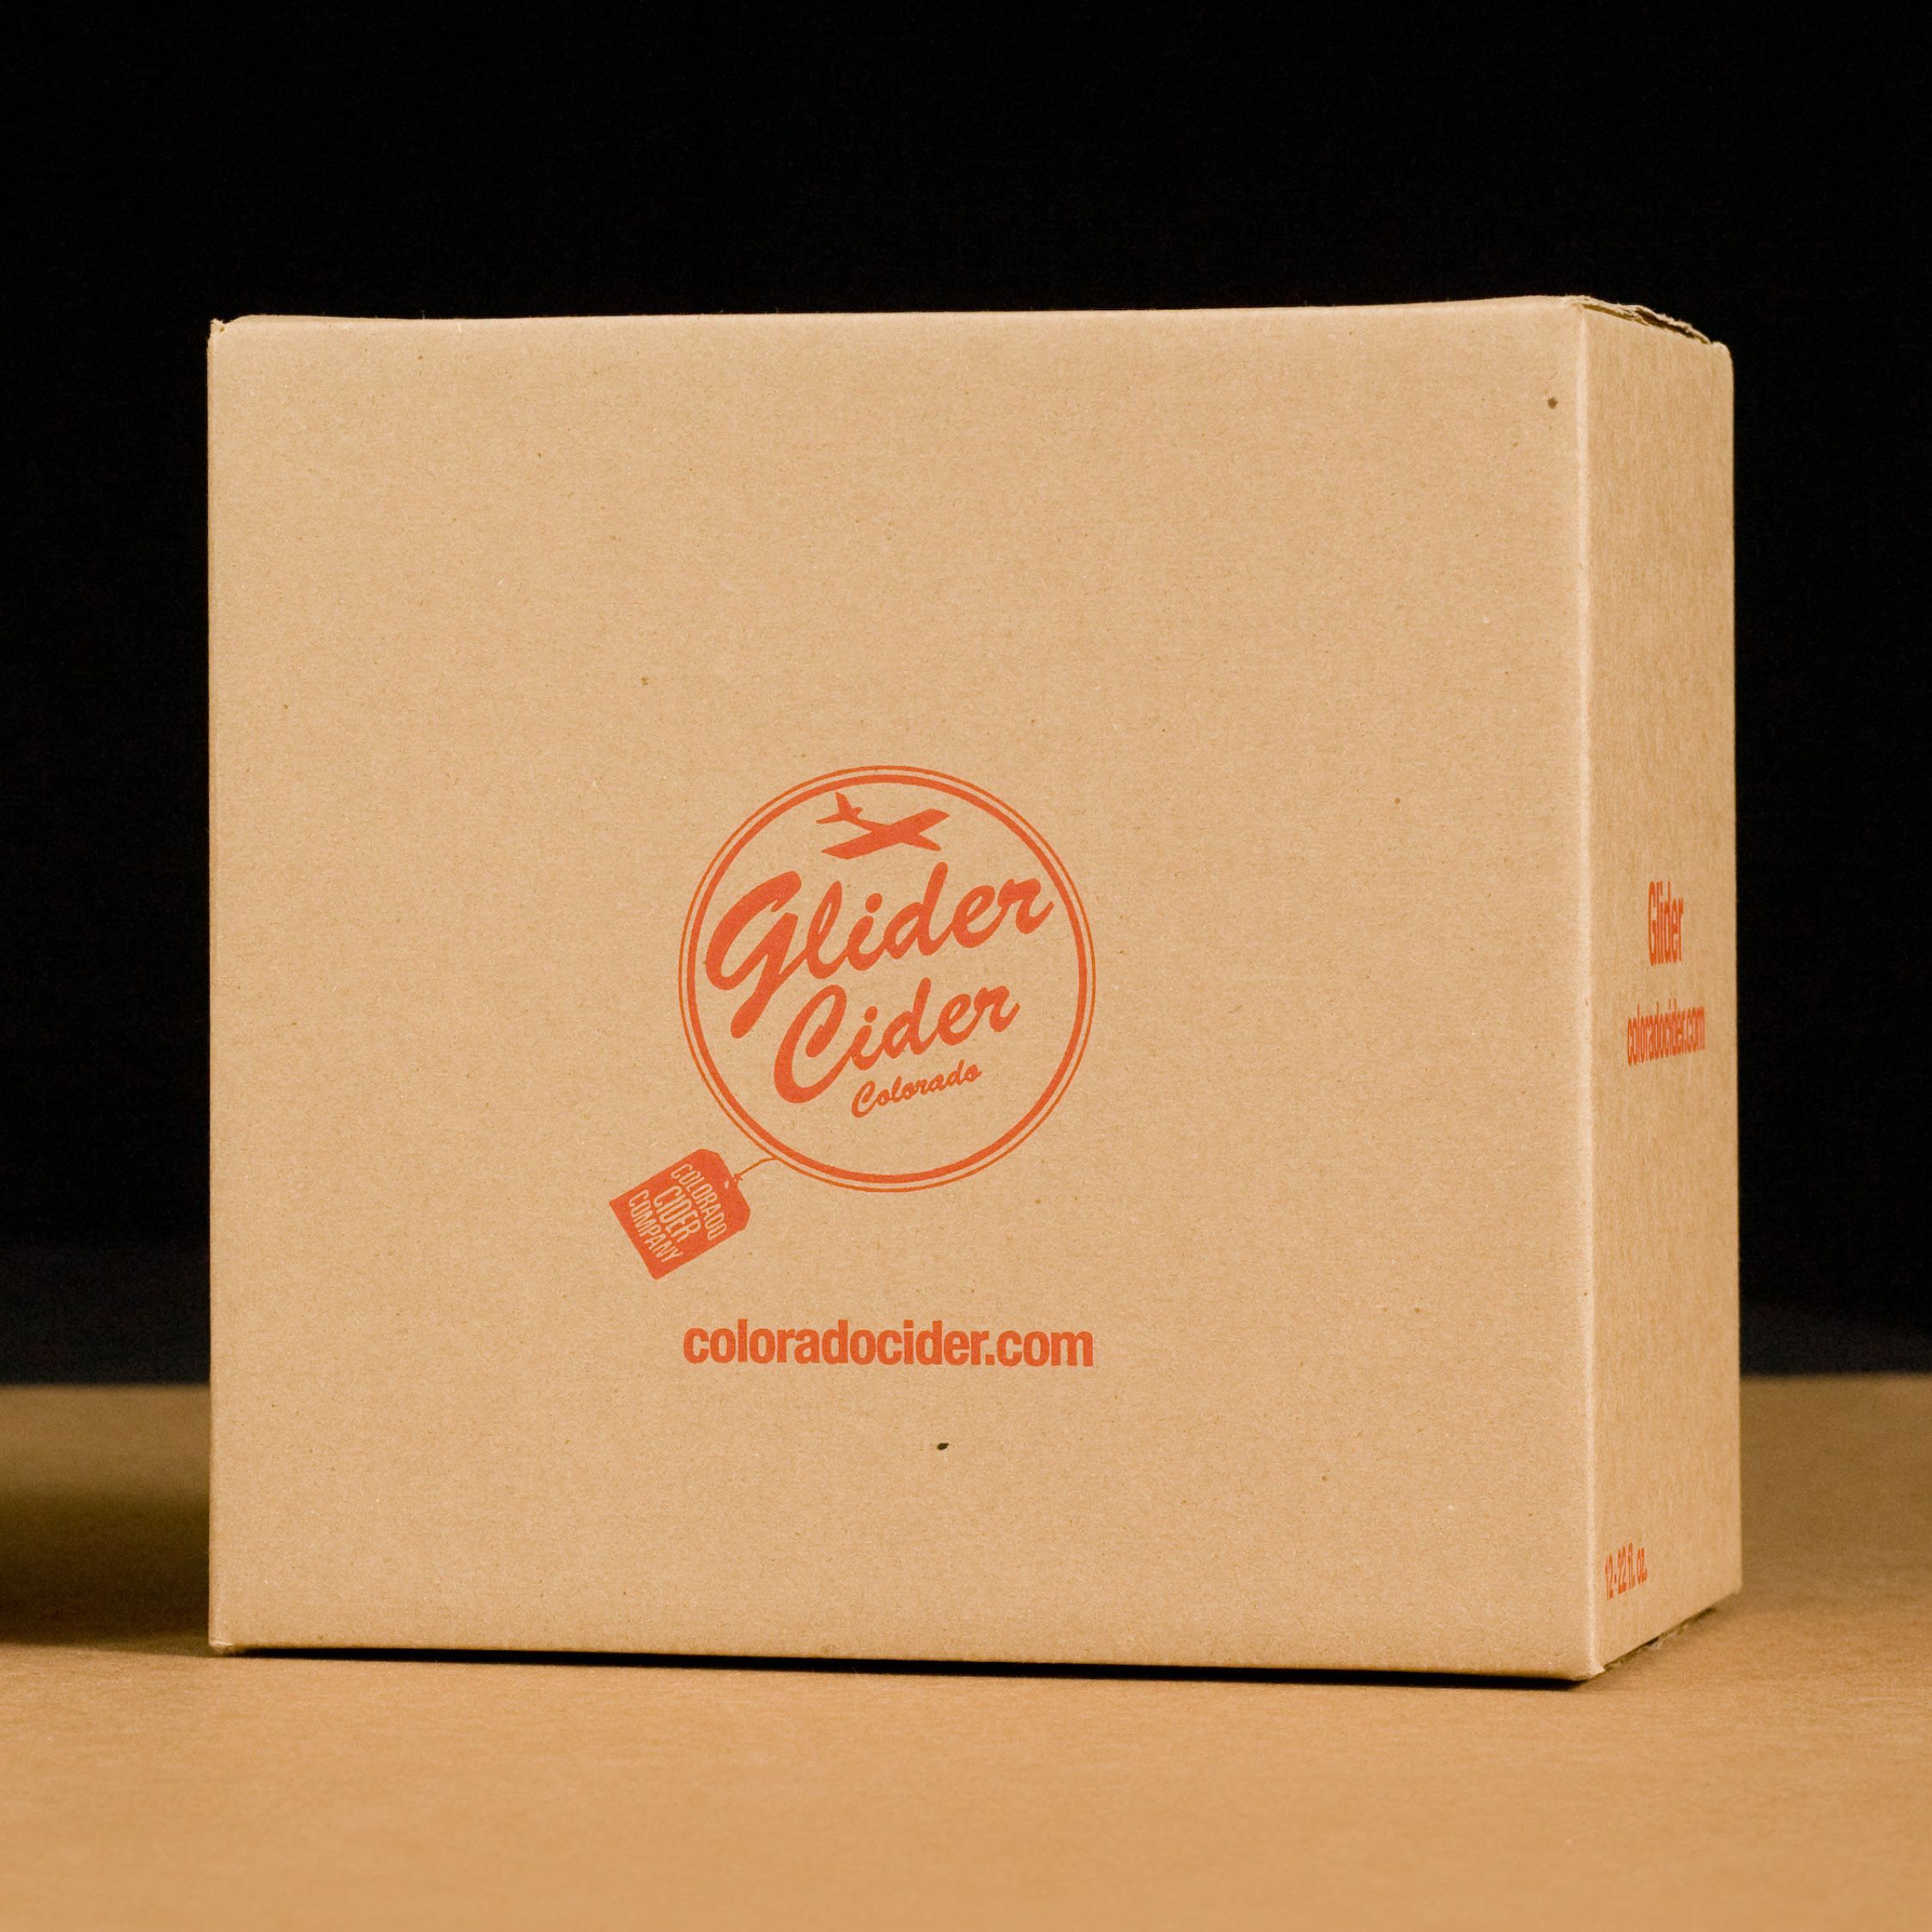 Glider Cider Colorado Direct Print Box 1a